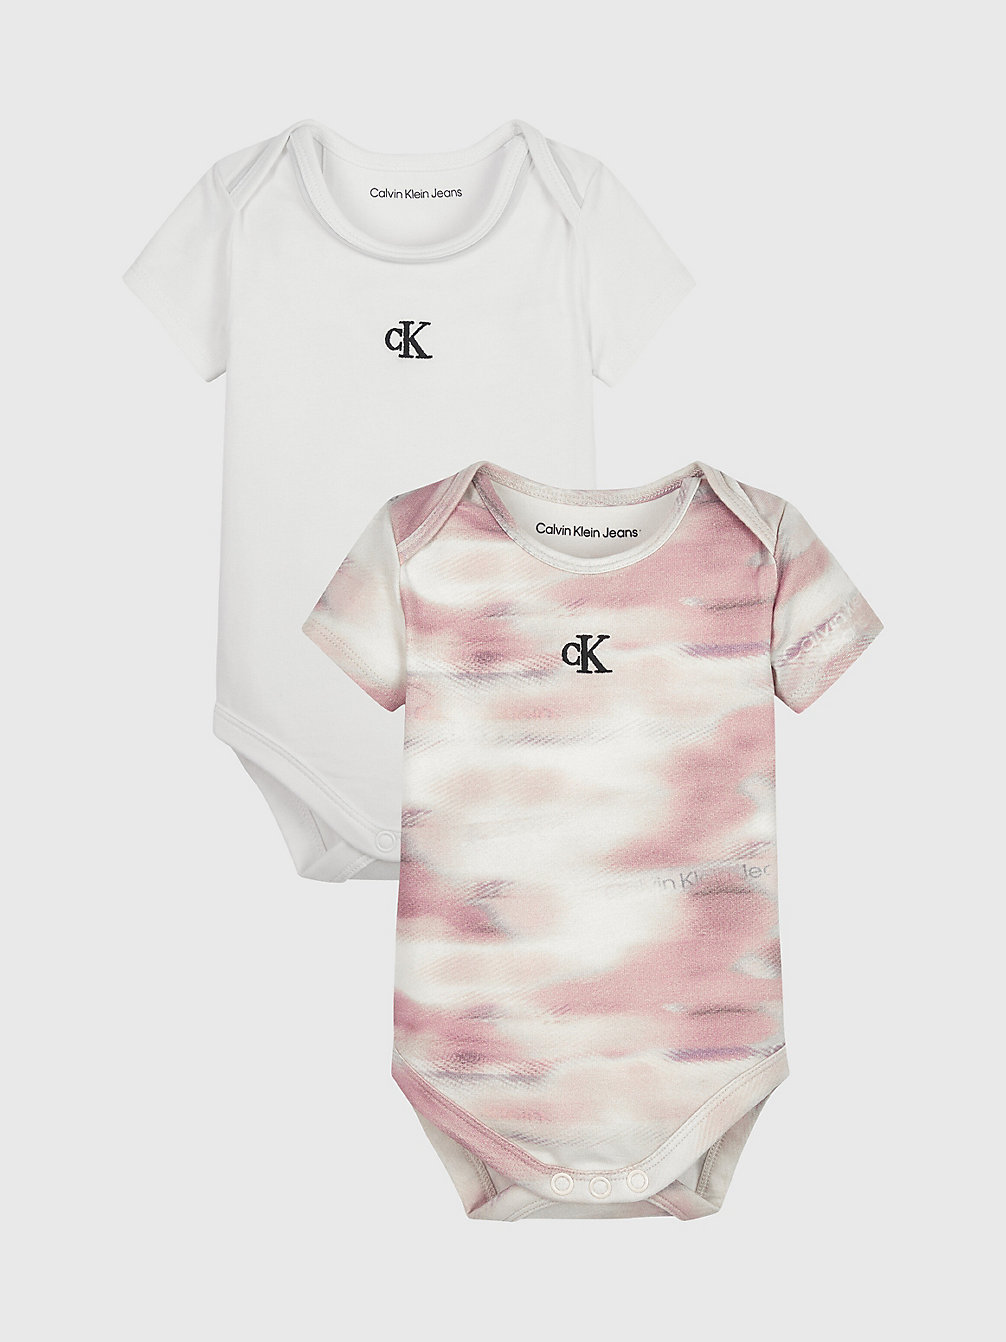 TIE DYE AOP 2-Pack Newborn Bodysuit Set undefined newborn Calvin Klein